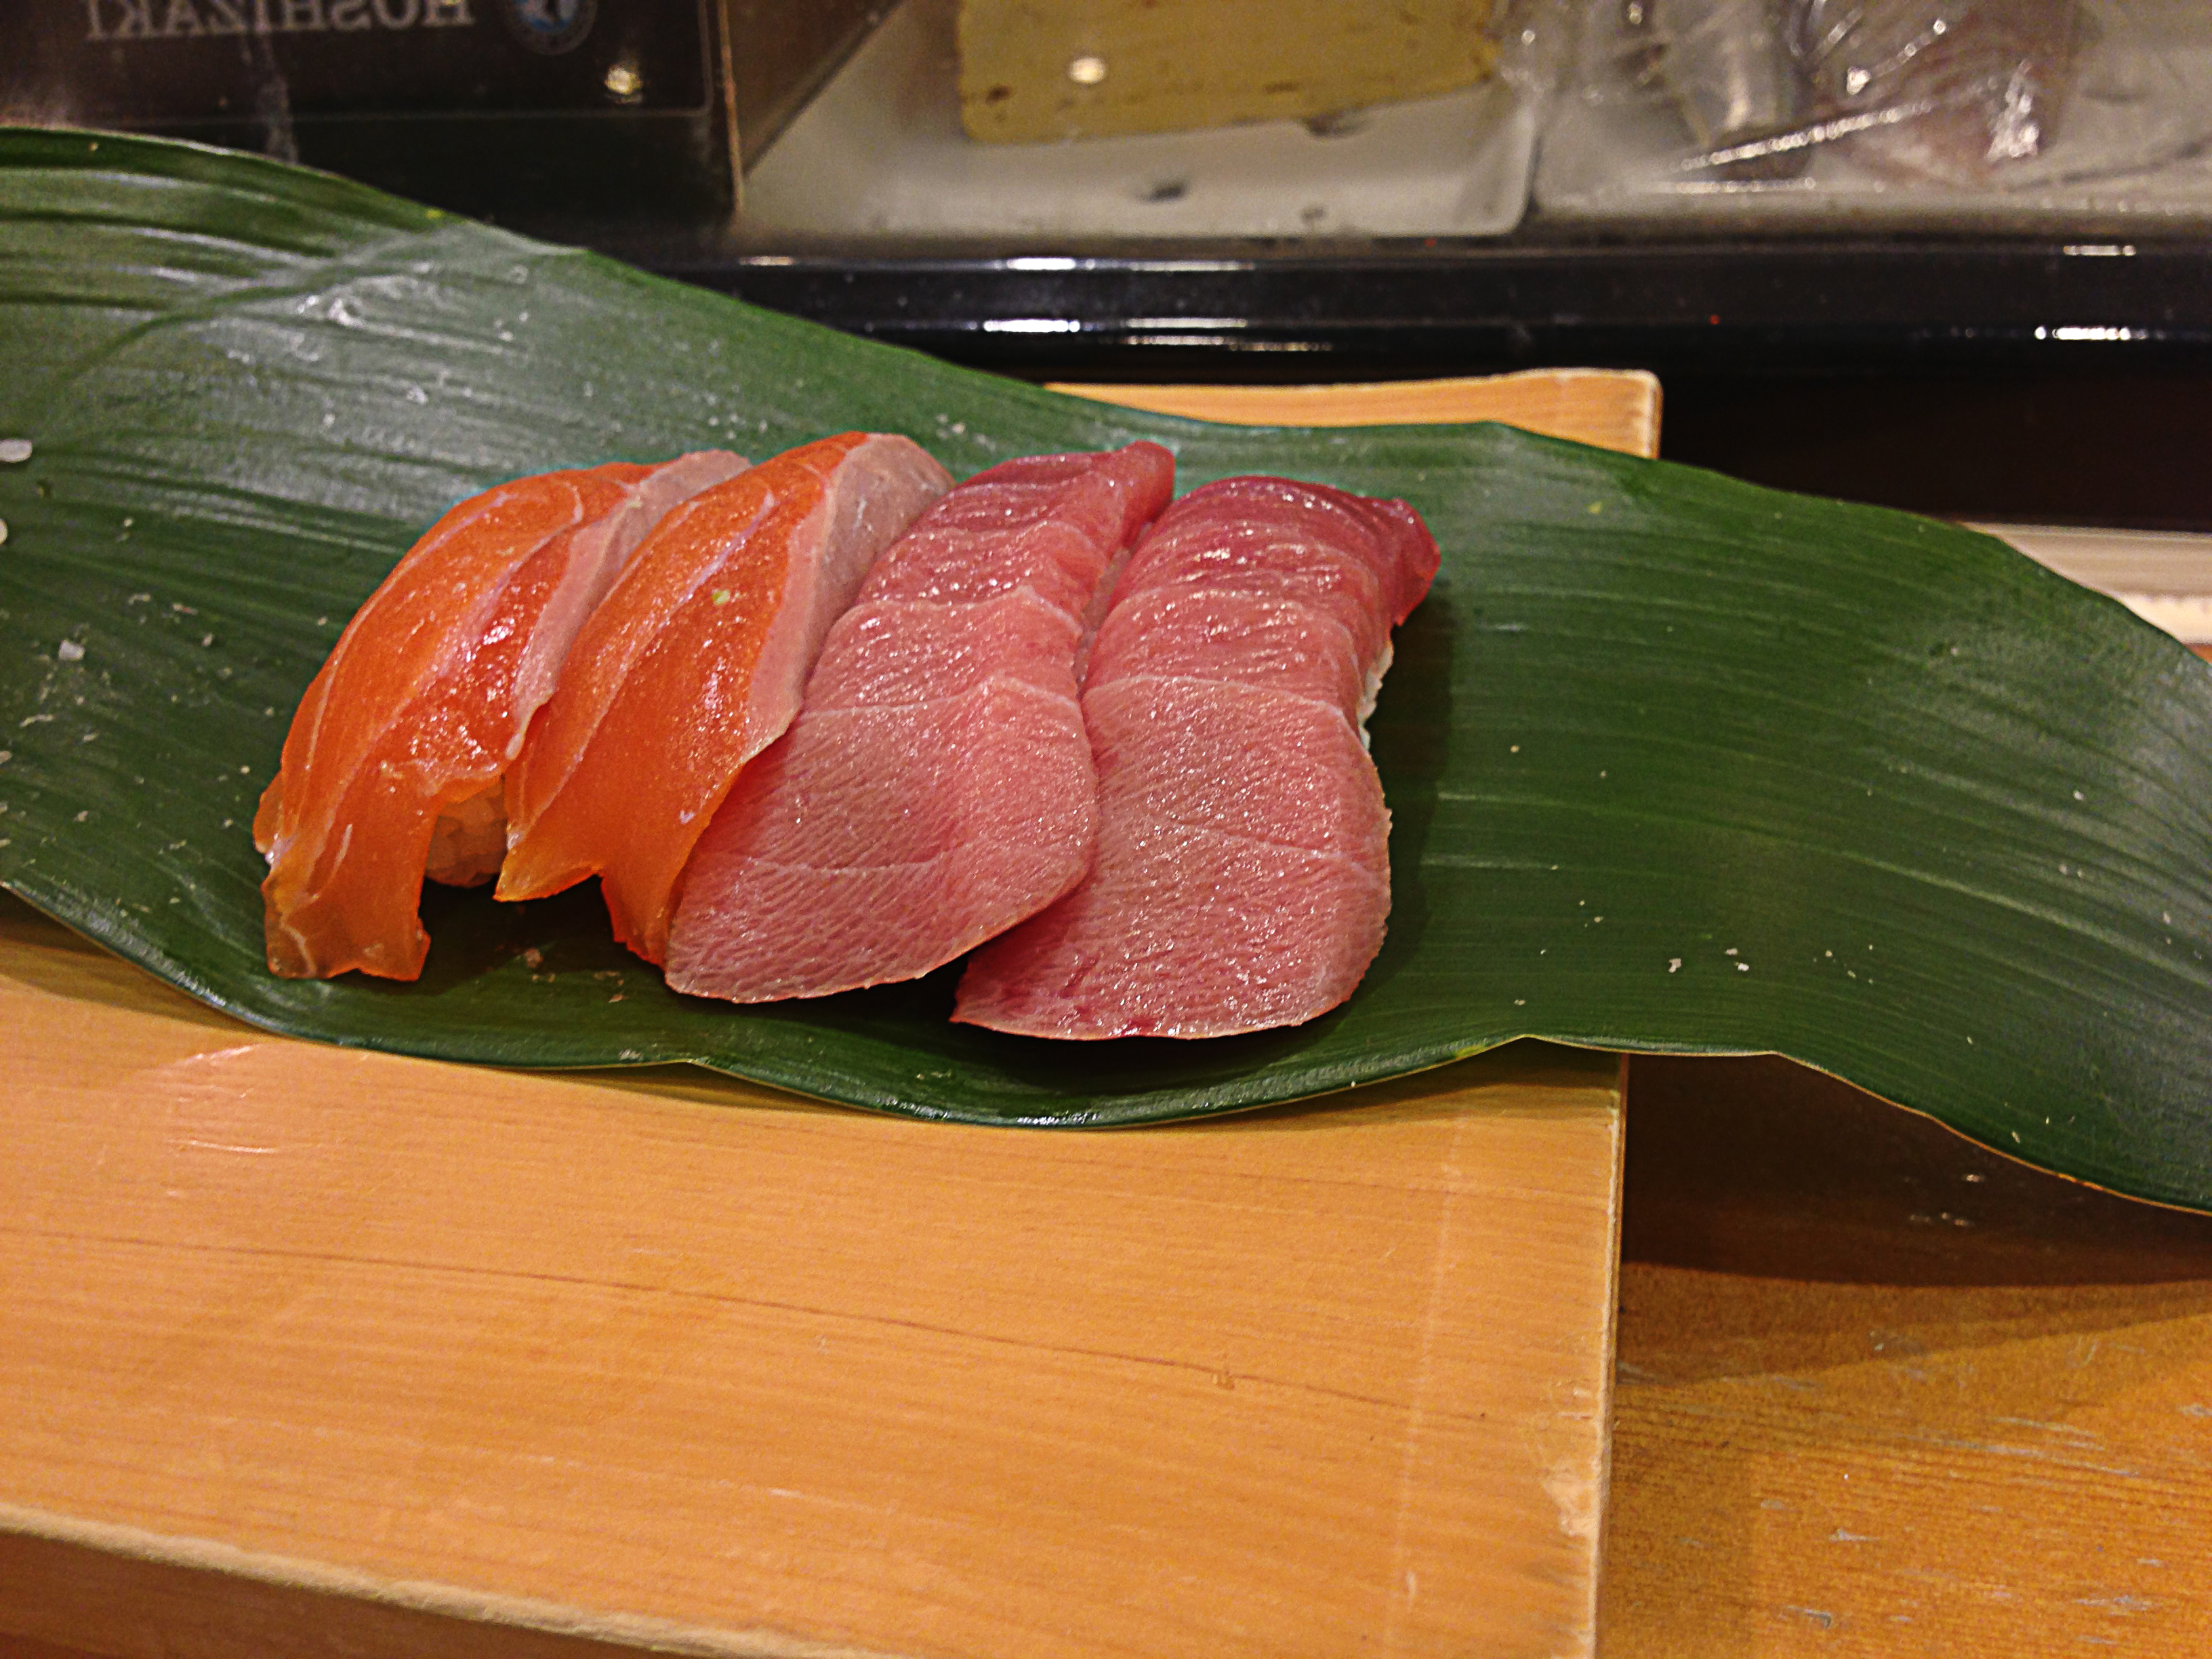 Sashimi at Nihonkai Asakusa in Tokyo. Photo by alphacityguides.